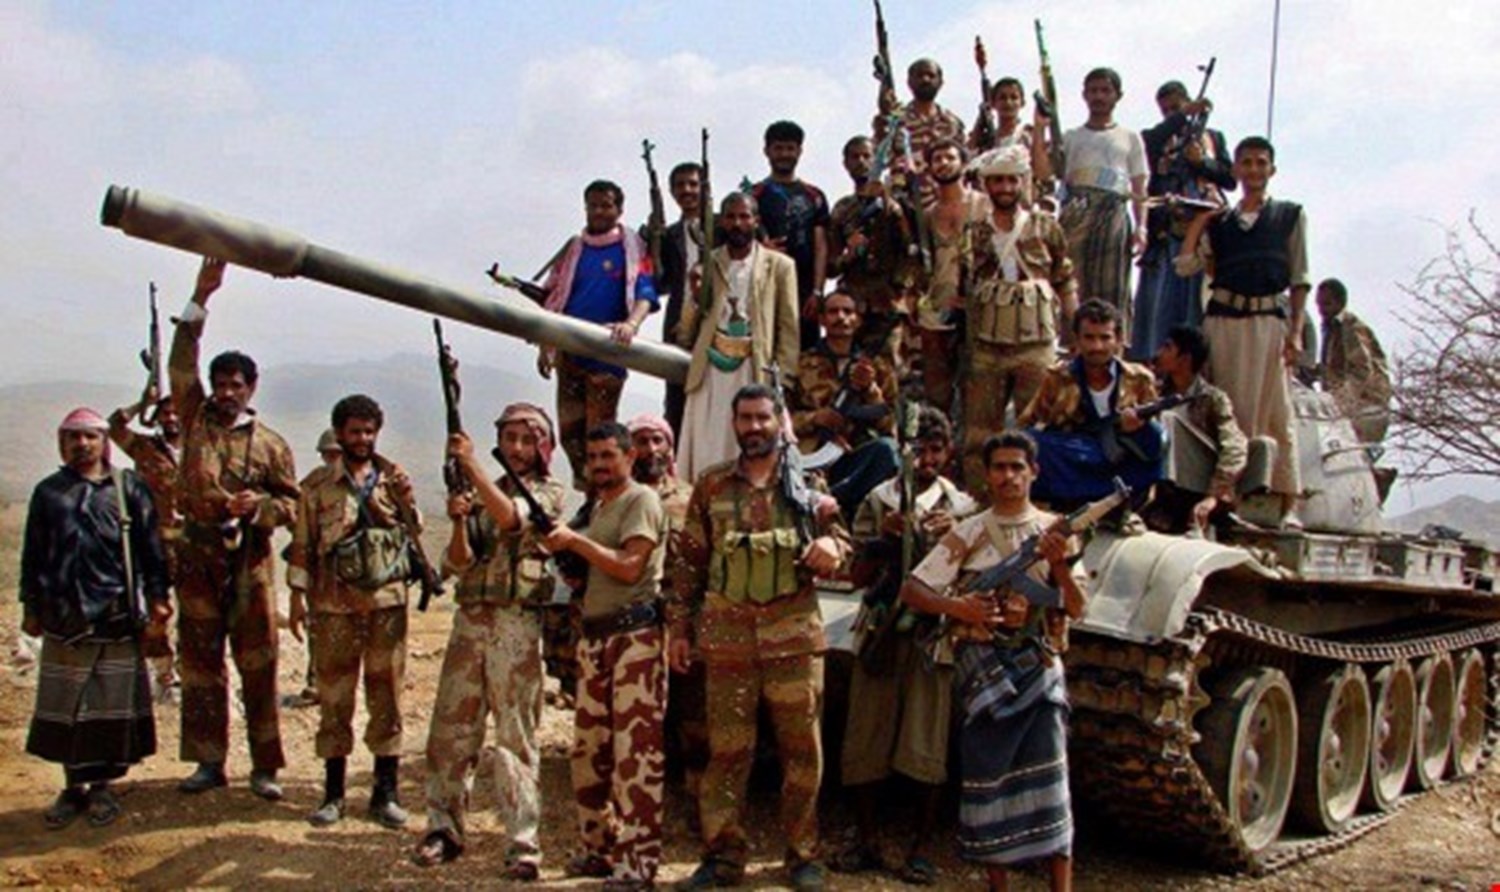 فضيحة "آل سعود" الجديدة في قلب اليمن.. حصار عشرات المرتزقة جنوب محافظة مأرب + صور